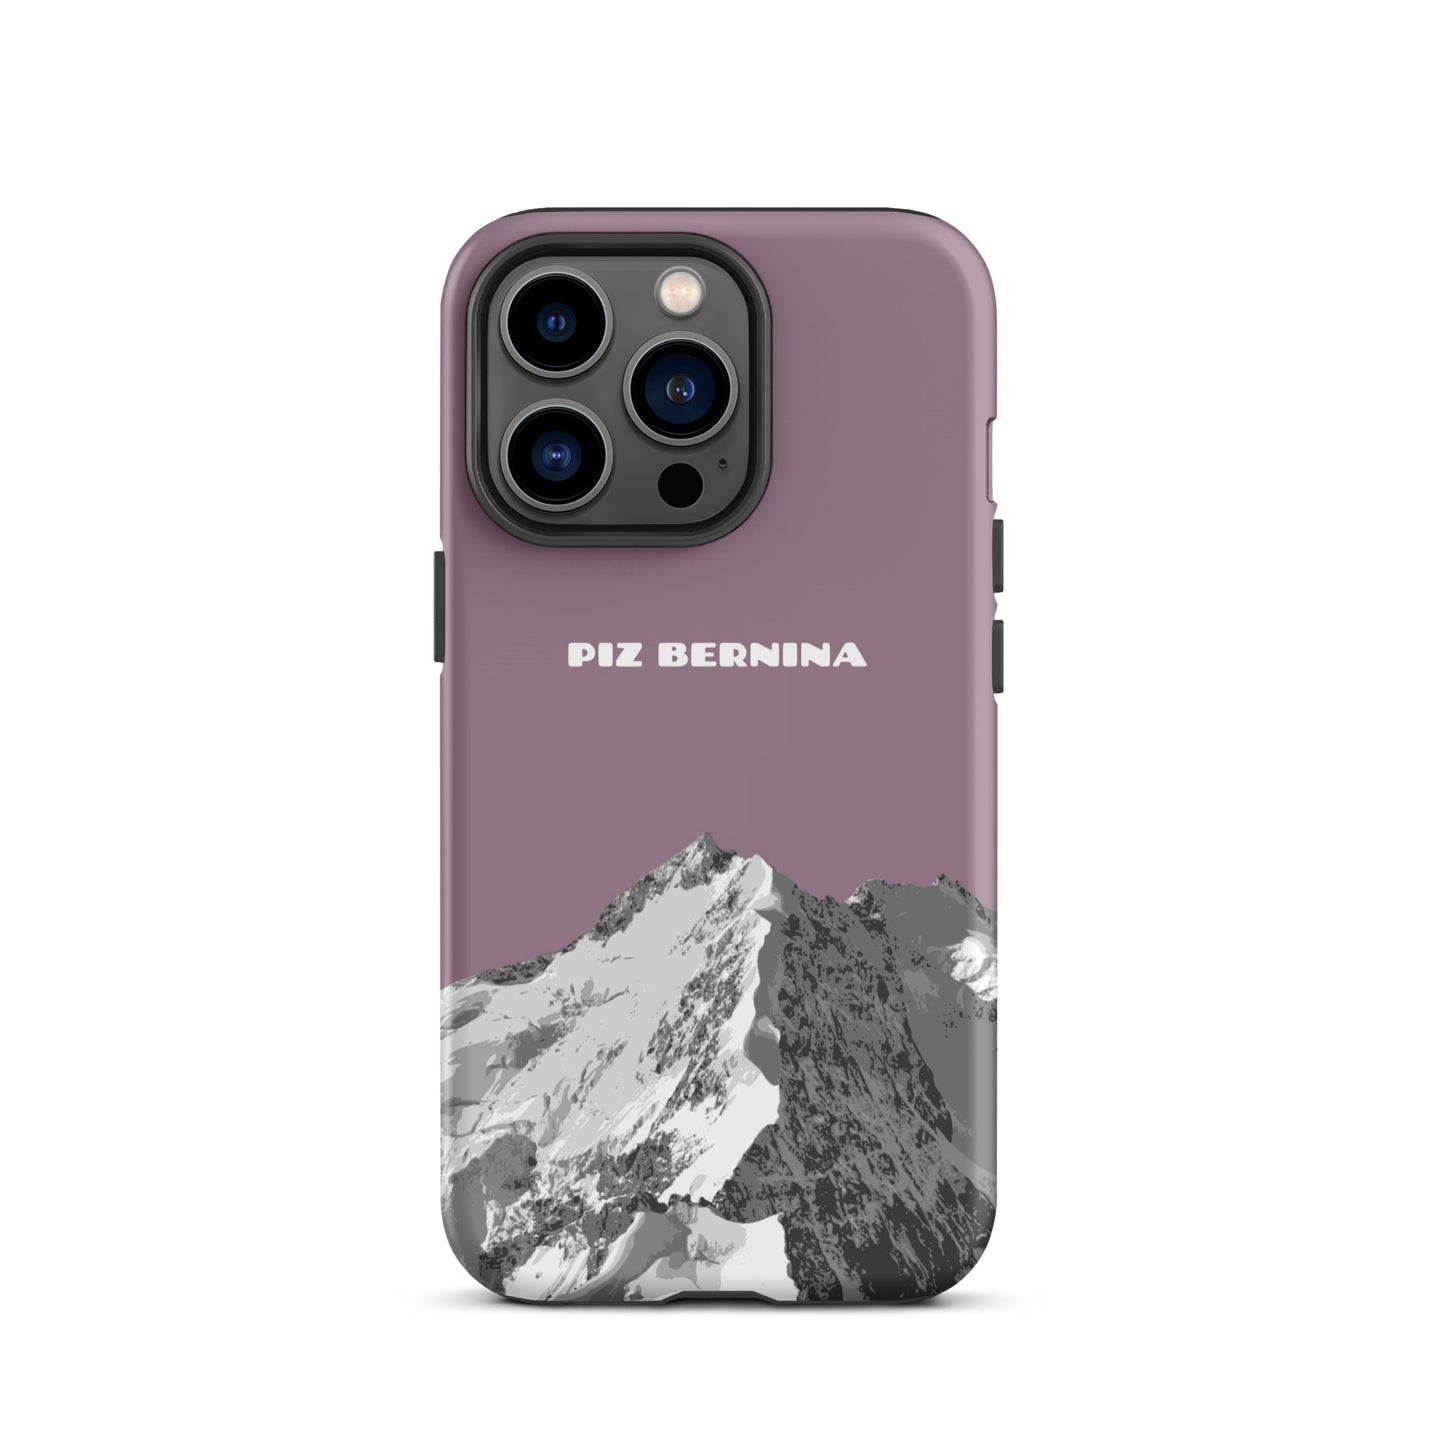 Hülle für das iPhone 13 Pro von Apple in der Farbe Pastellviolett, dass den Piz Bernina in Graubünden zeigt.